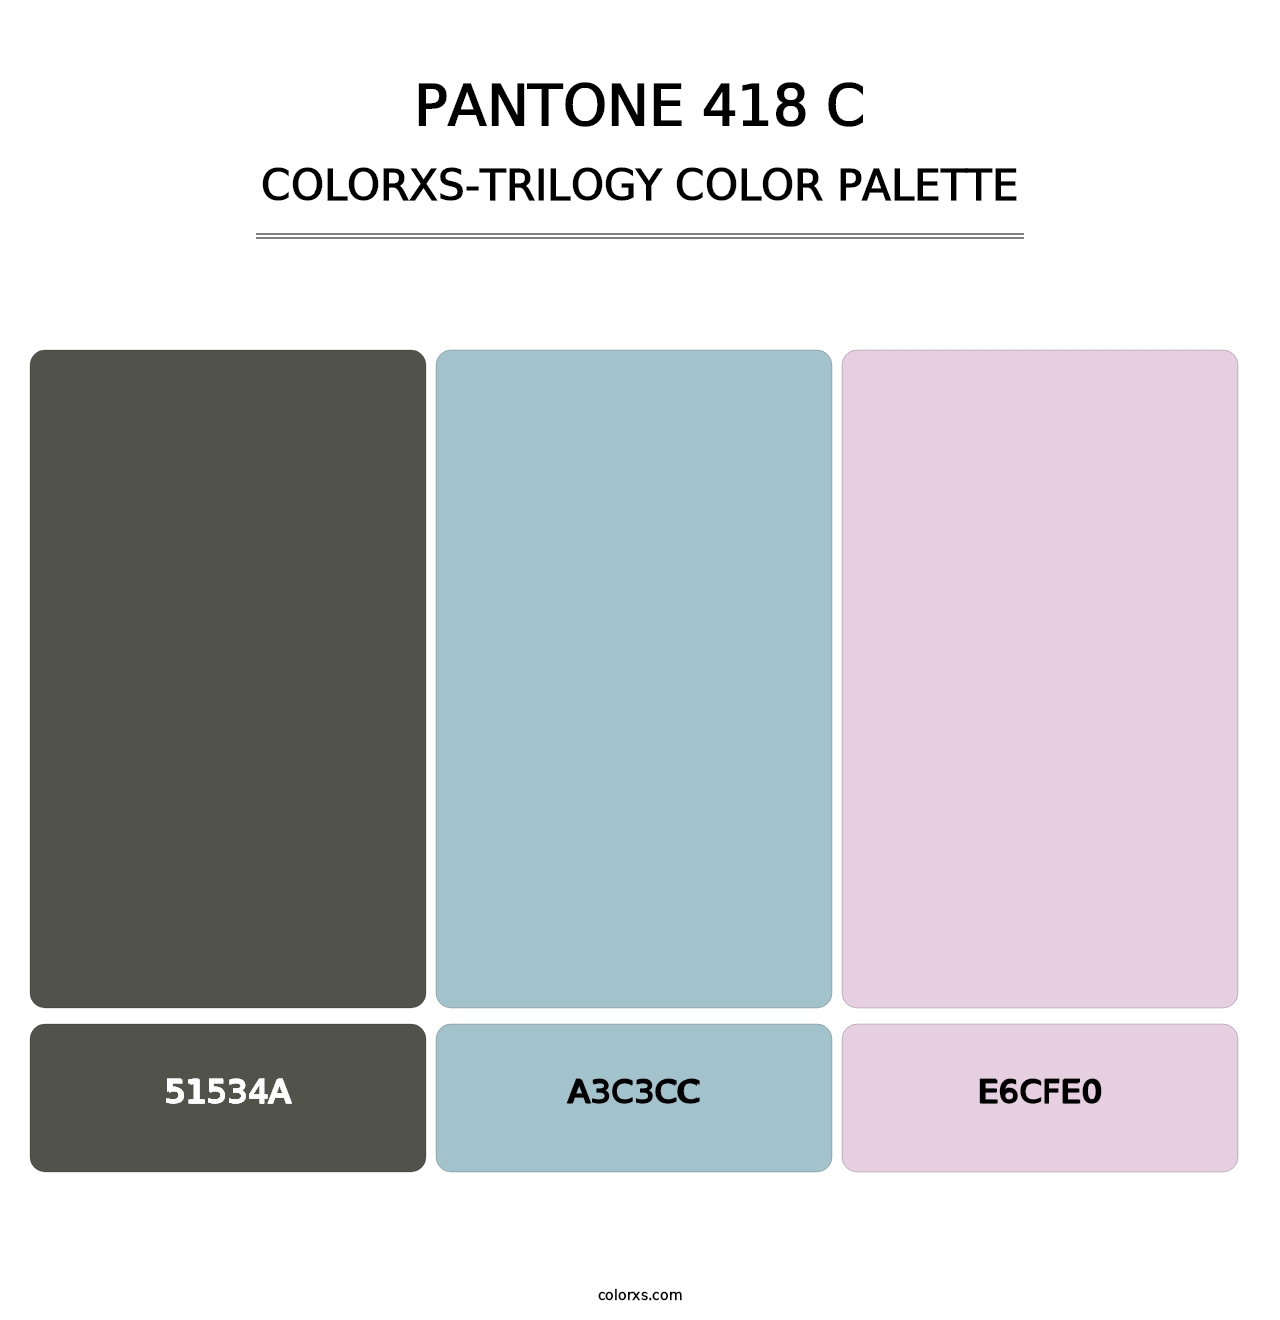 PANTONE 418 C - Colorxs Trilogy Palette